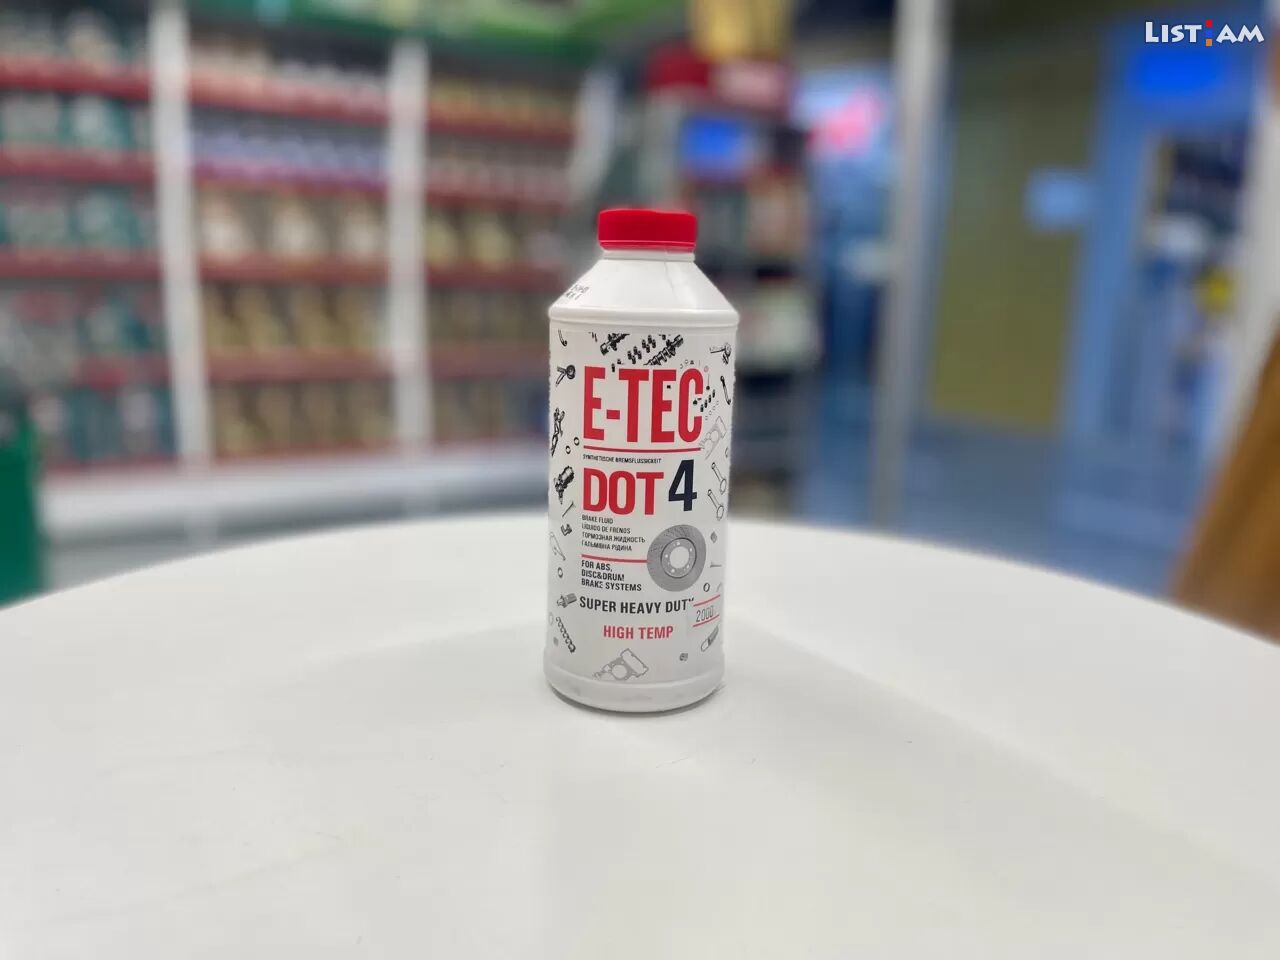 ETec Dot4